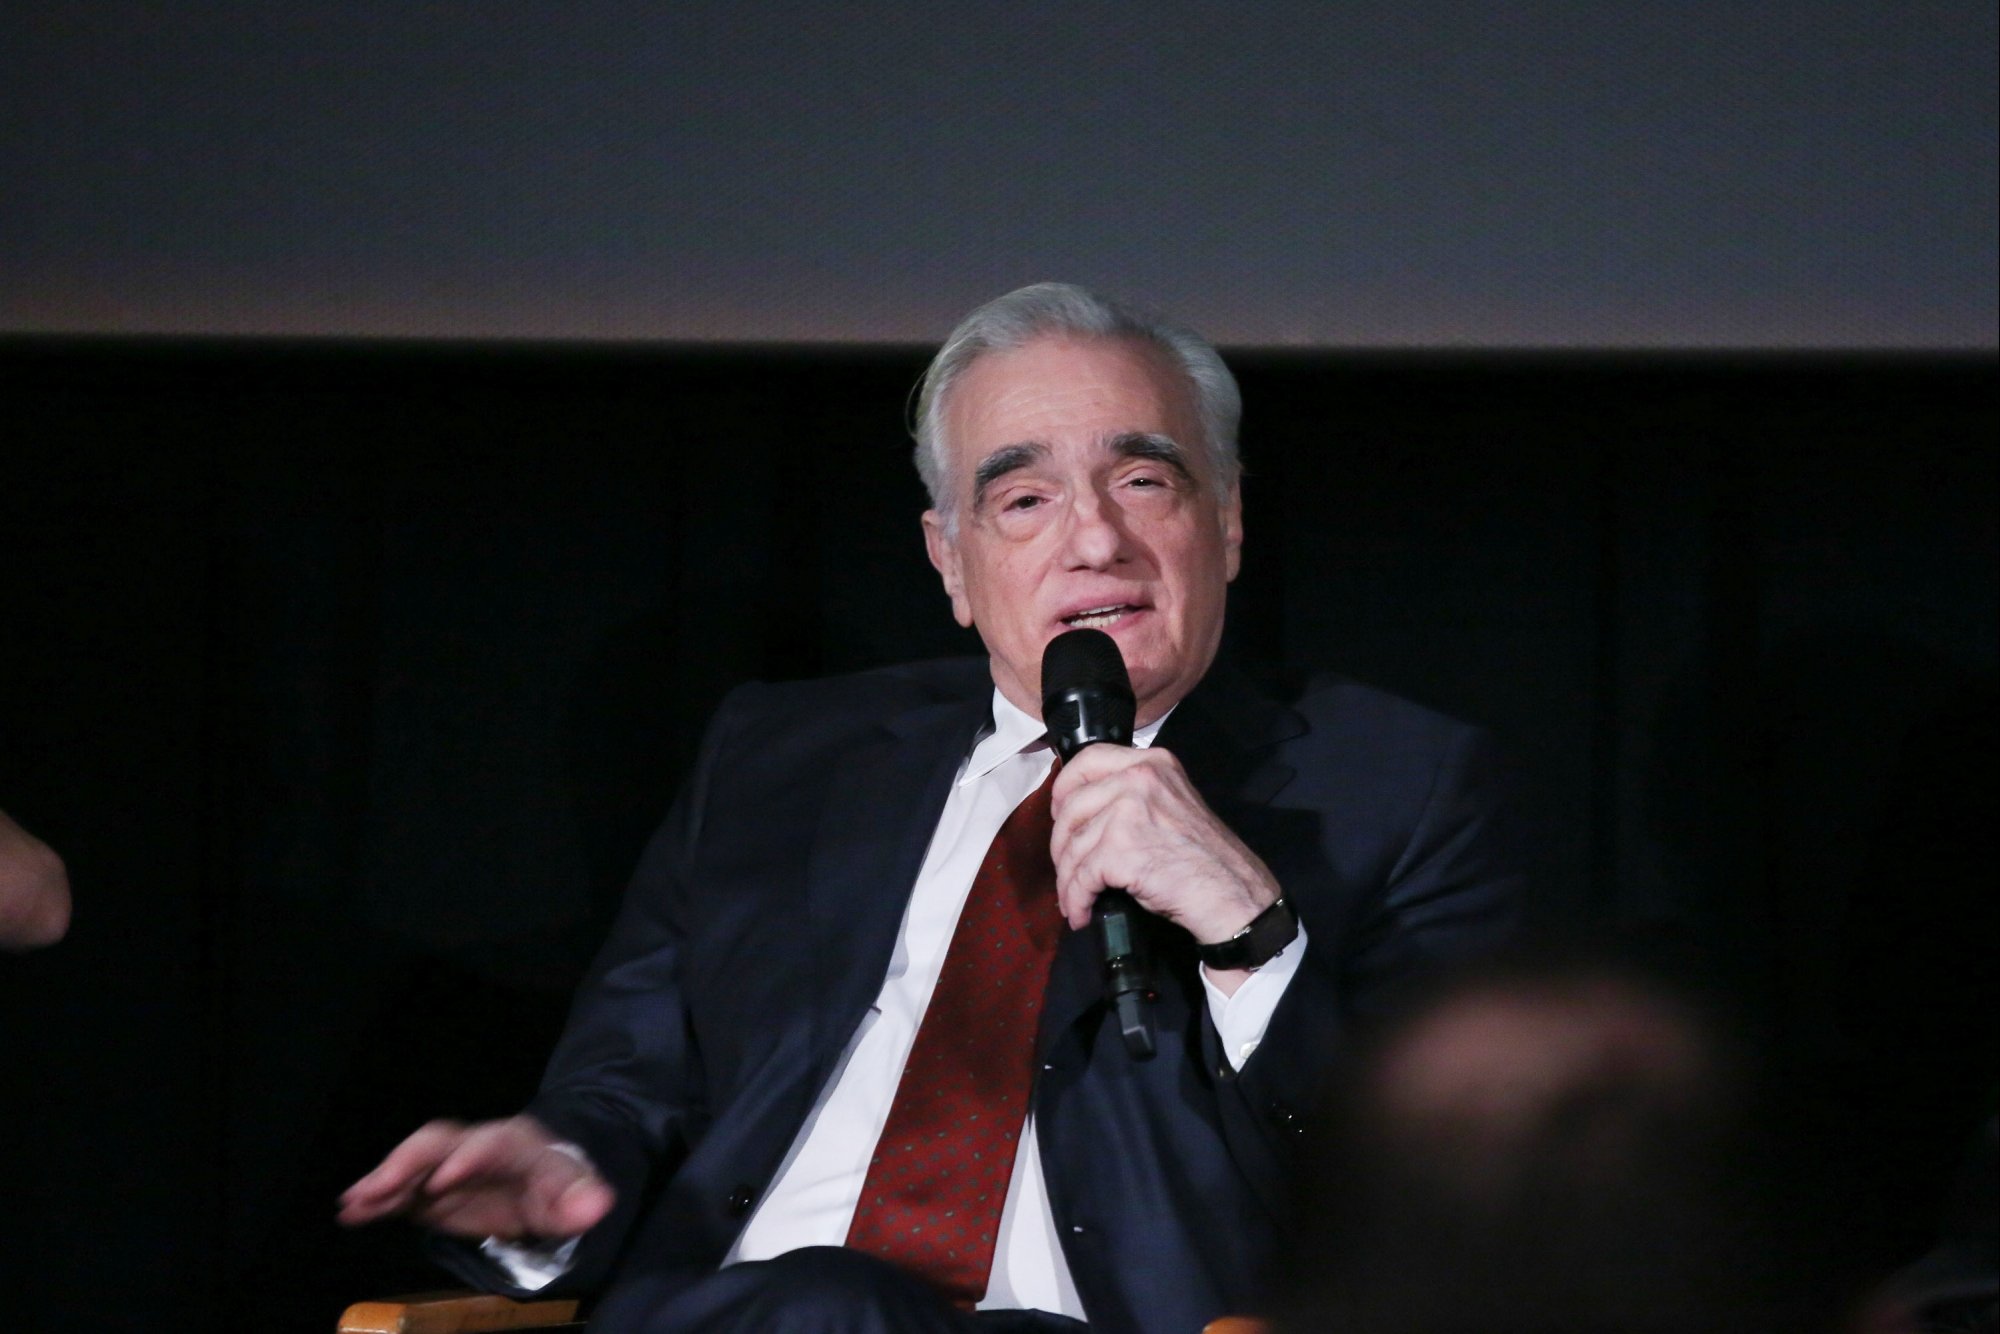 Martin Scorsese lors d'une session de questions-réponses après la projection de 